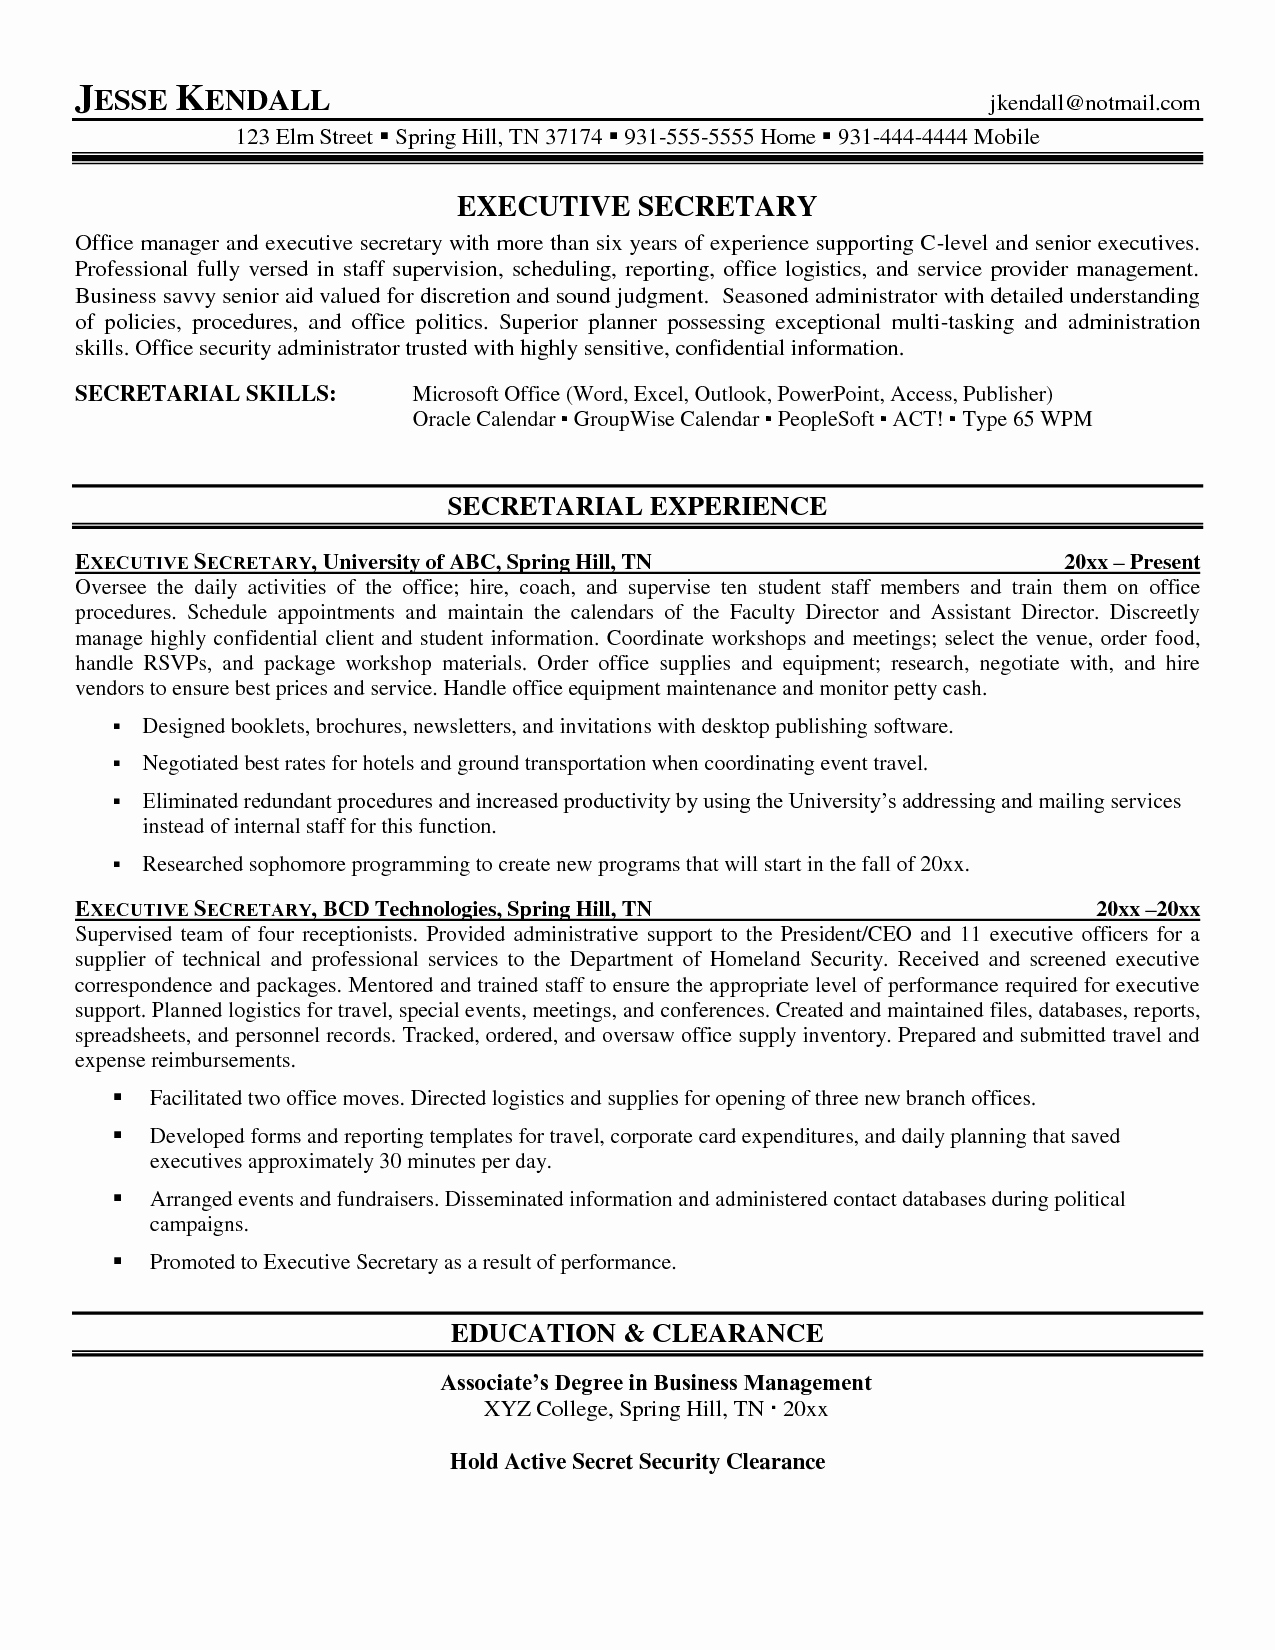 Resume Template for Office Job Best Of Resume Secretary